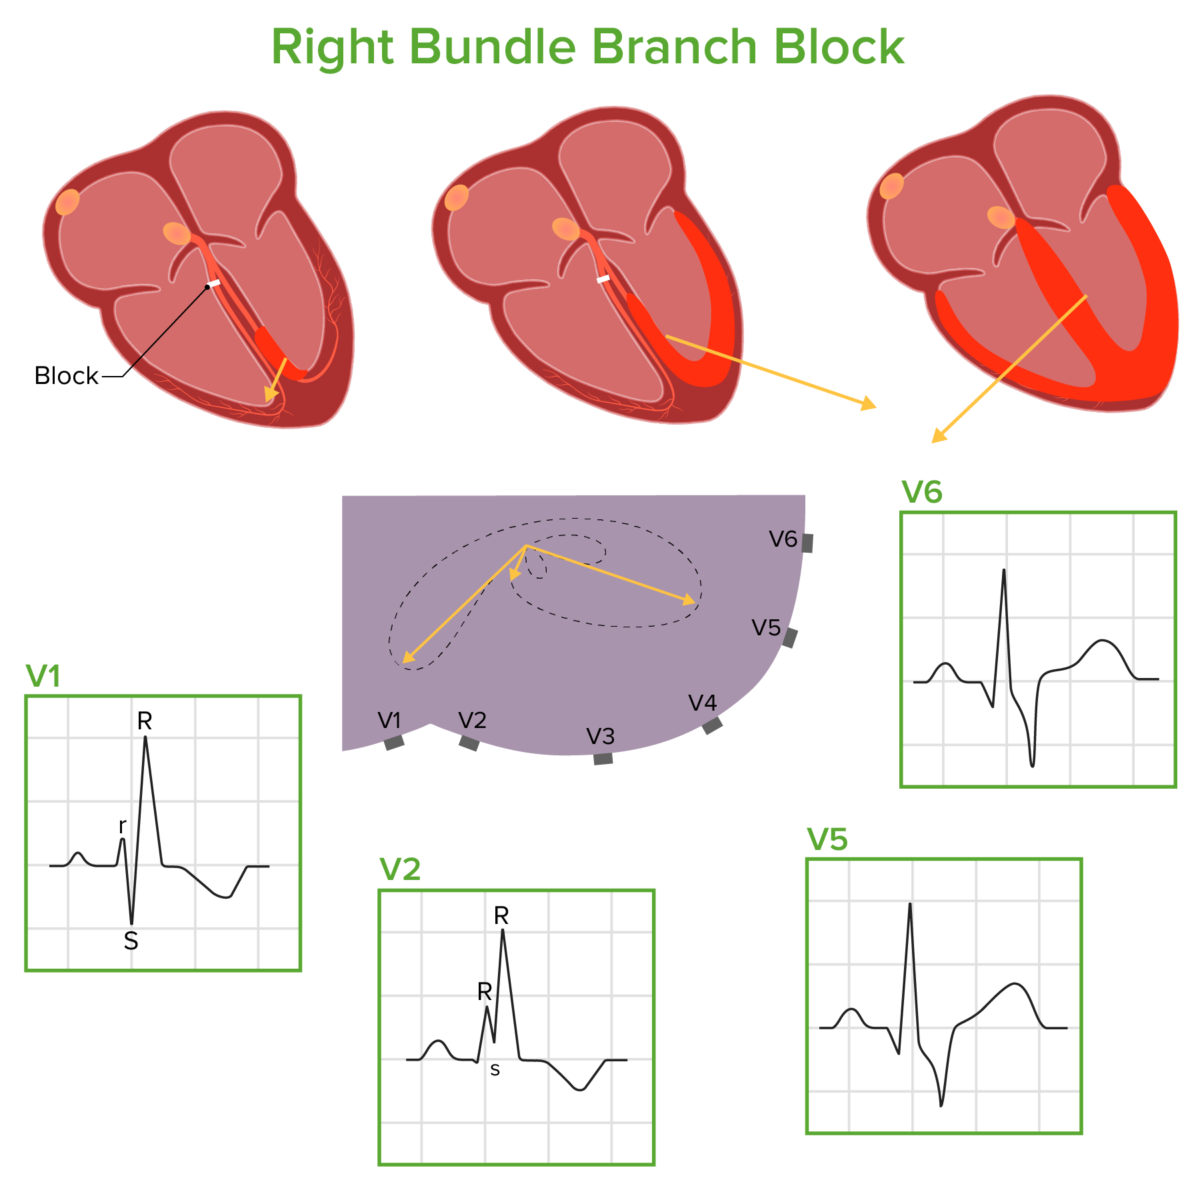 Right bundle branch block pathophysiology